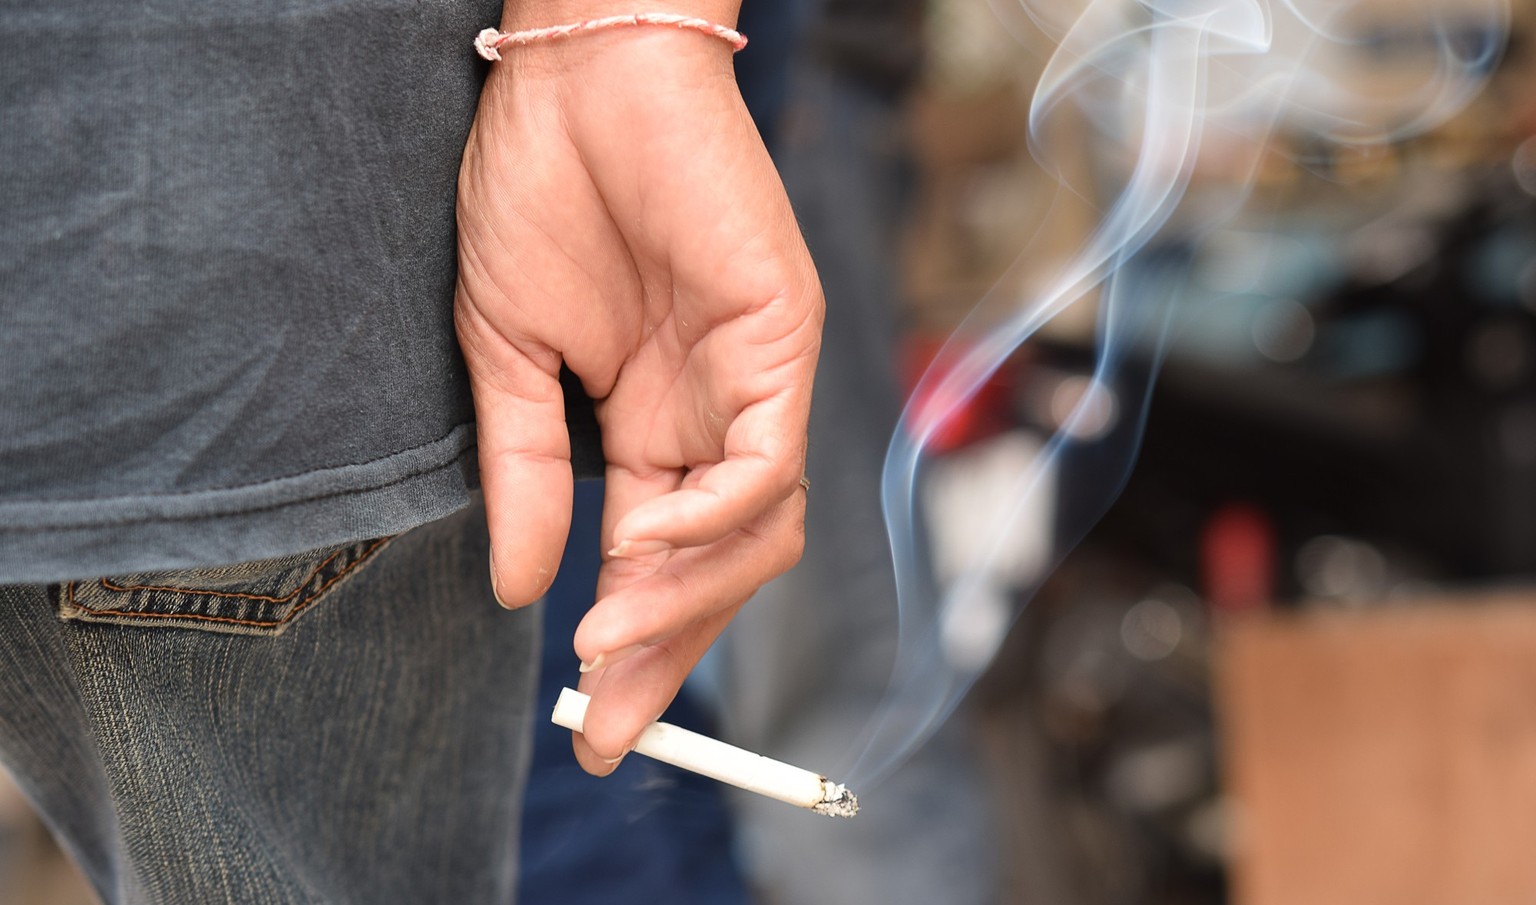 Weltnichtrauchertag, Zigarette, Rauchkonsum in der Schweiz